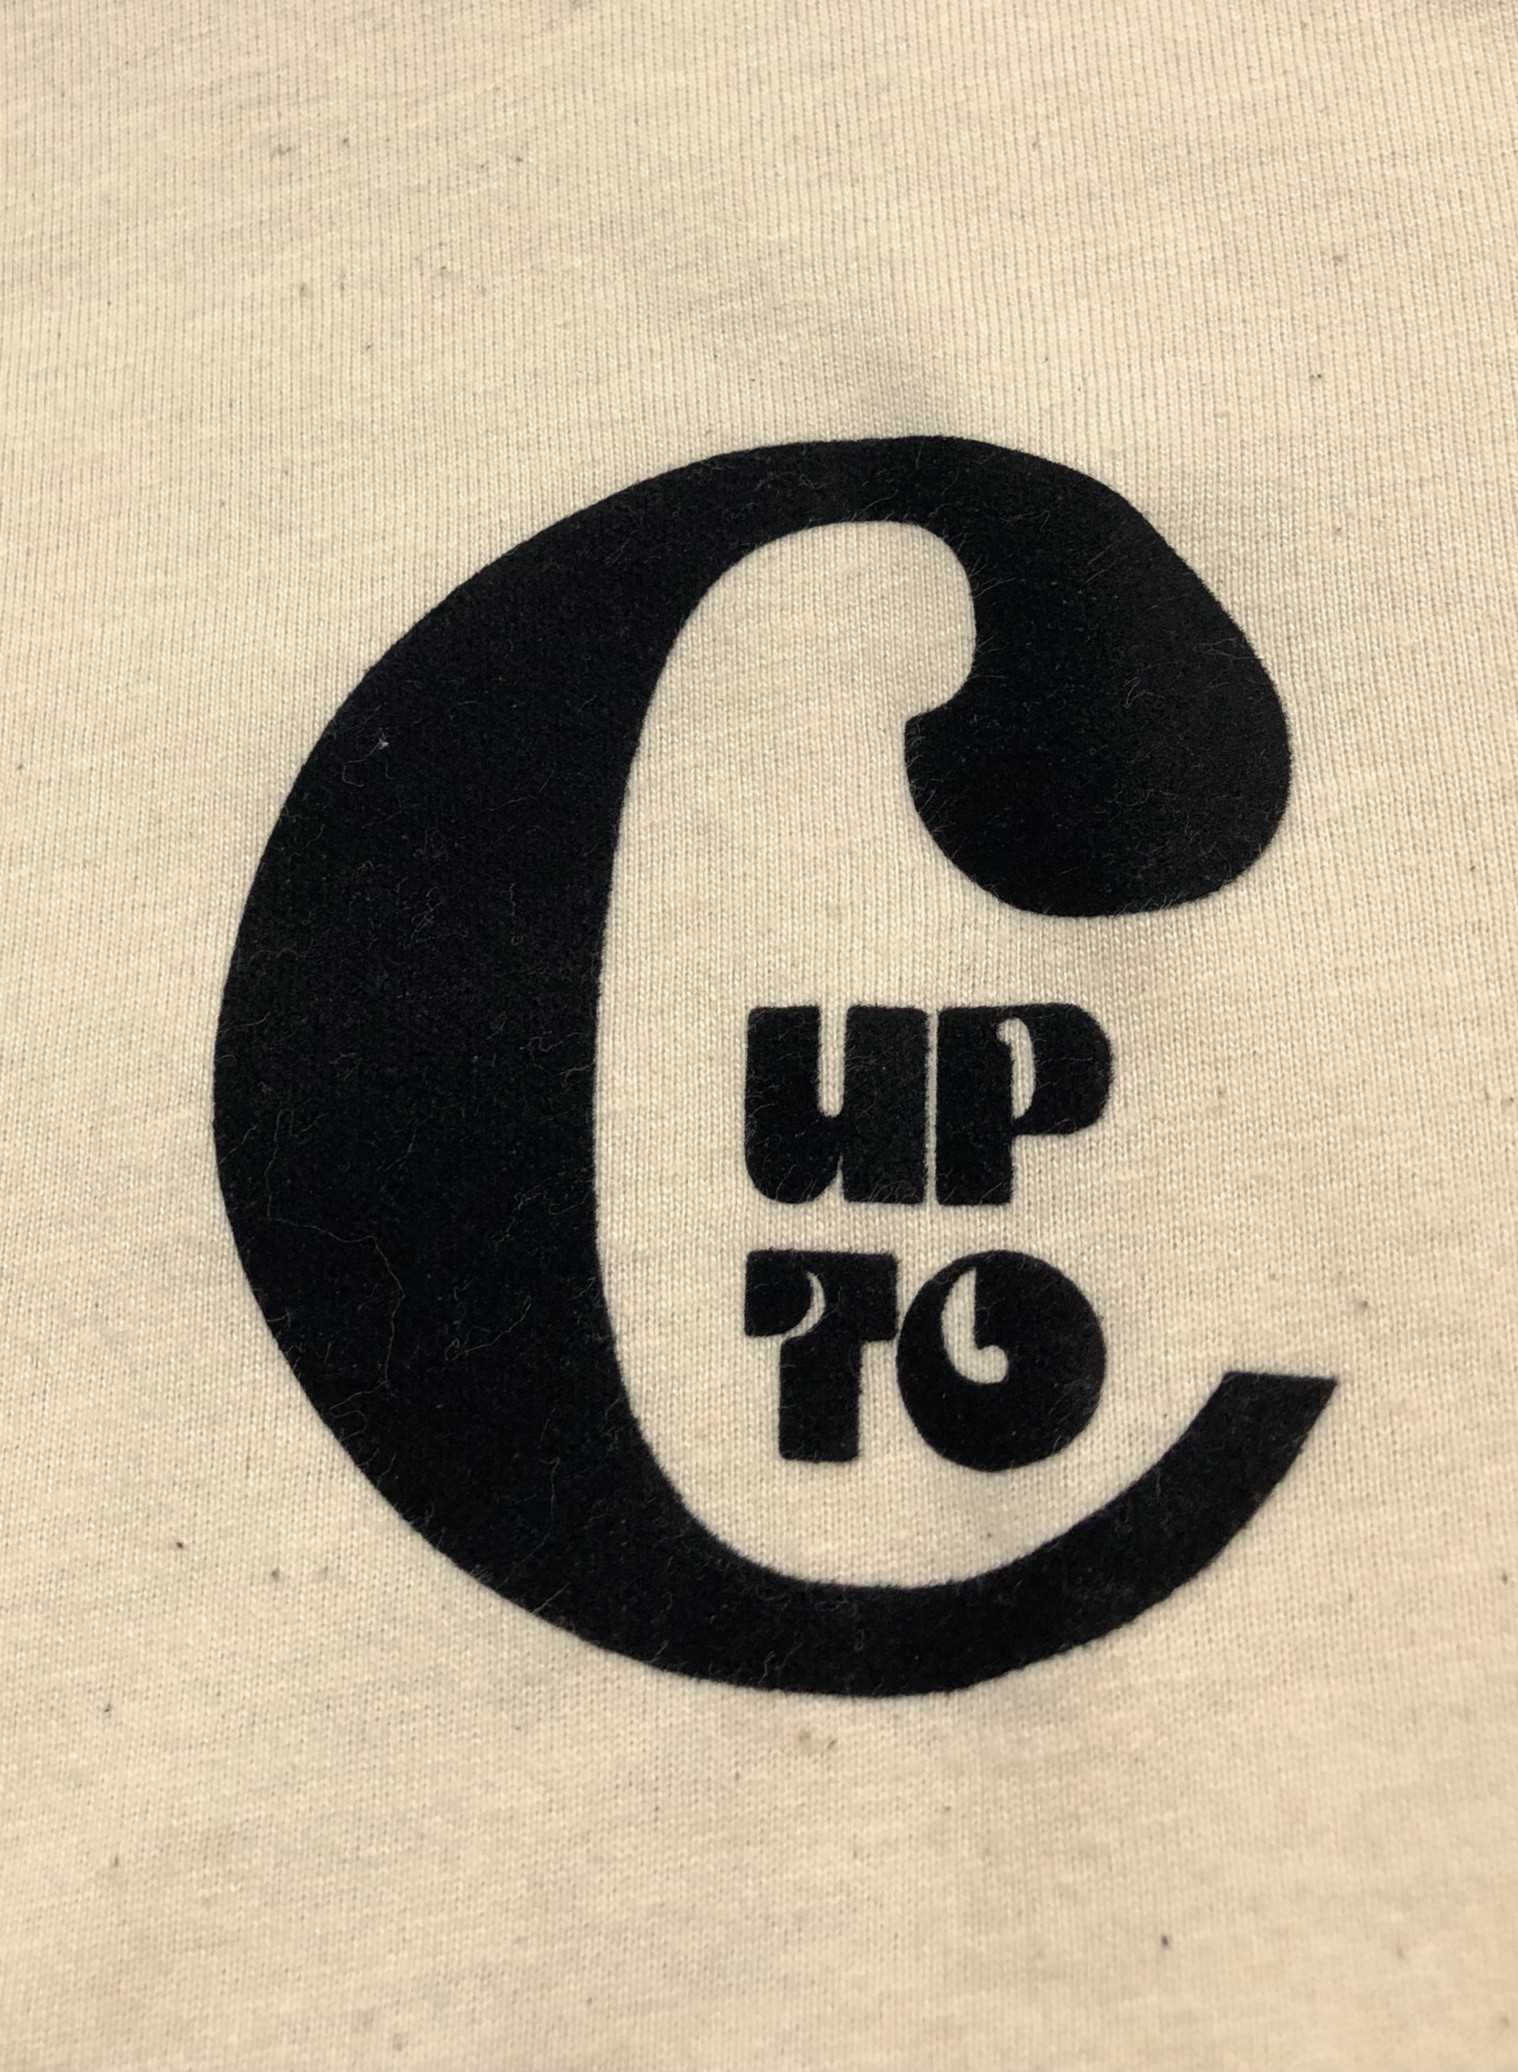 Visuel logo velour sur t-shirt